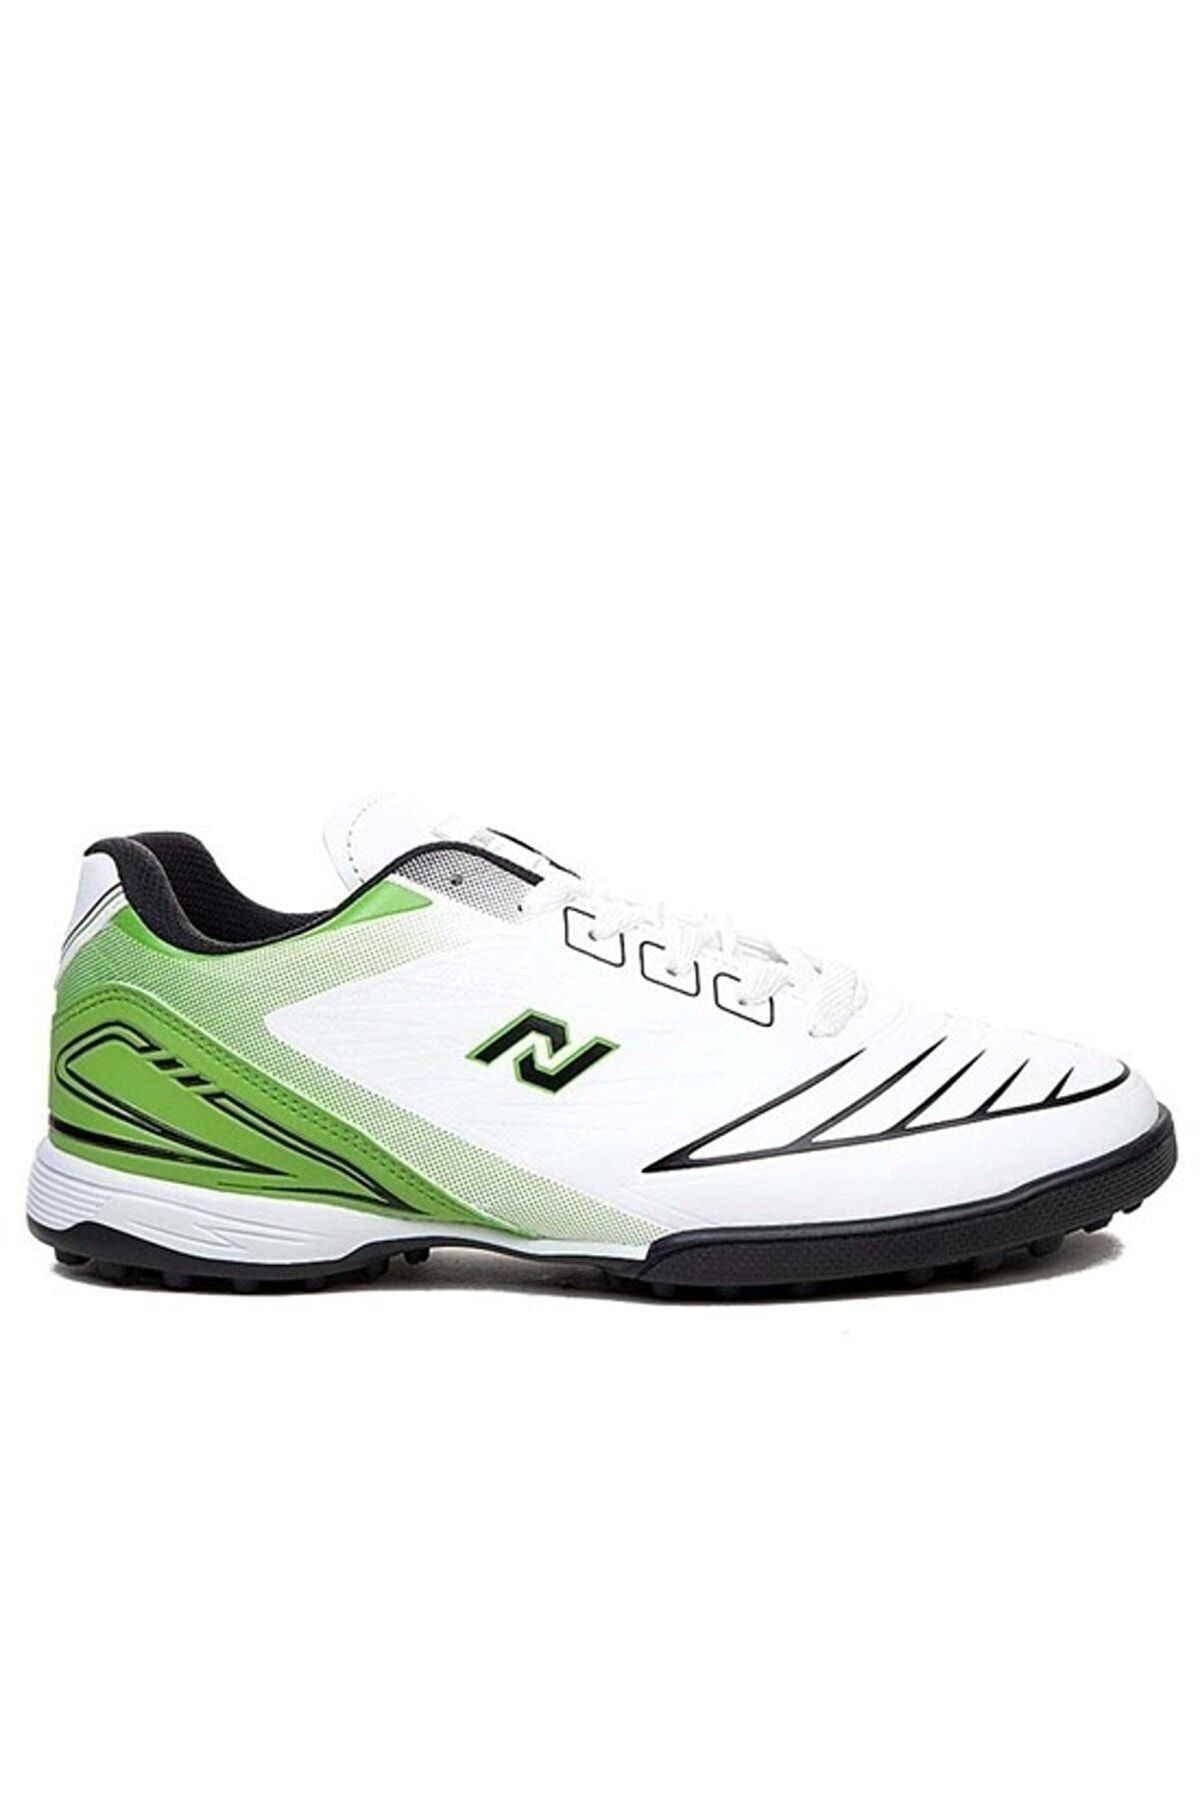 iskarpino Beyaz - Yeşil Erkek Çim Saha Halı Saha Futbol Ayakkabısı